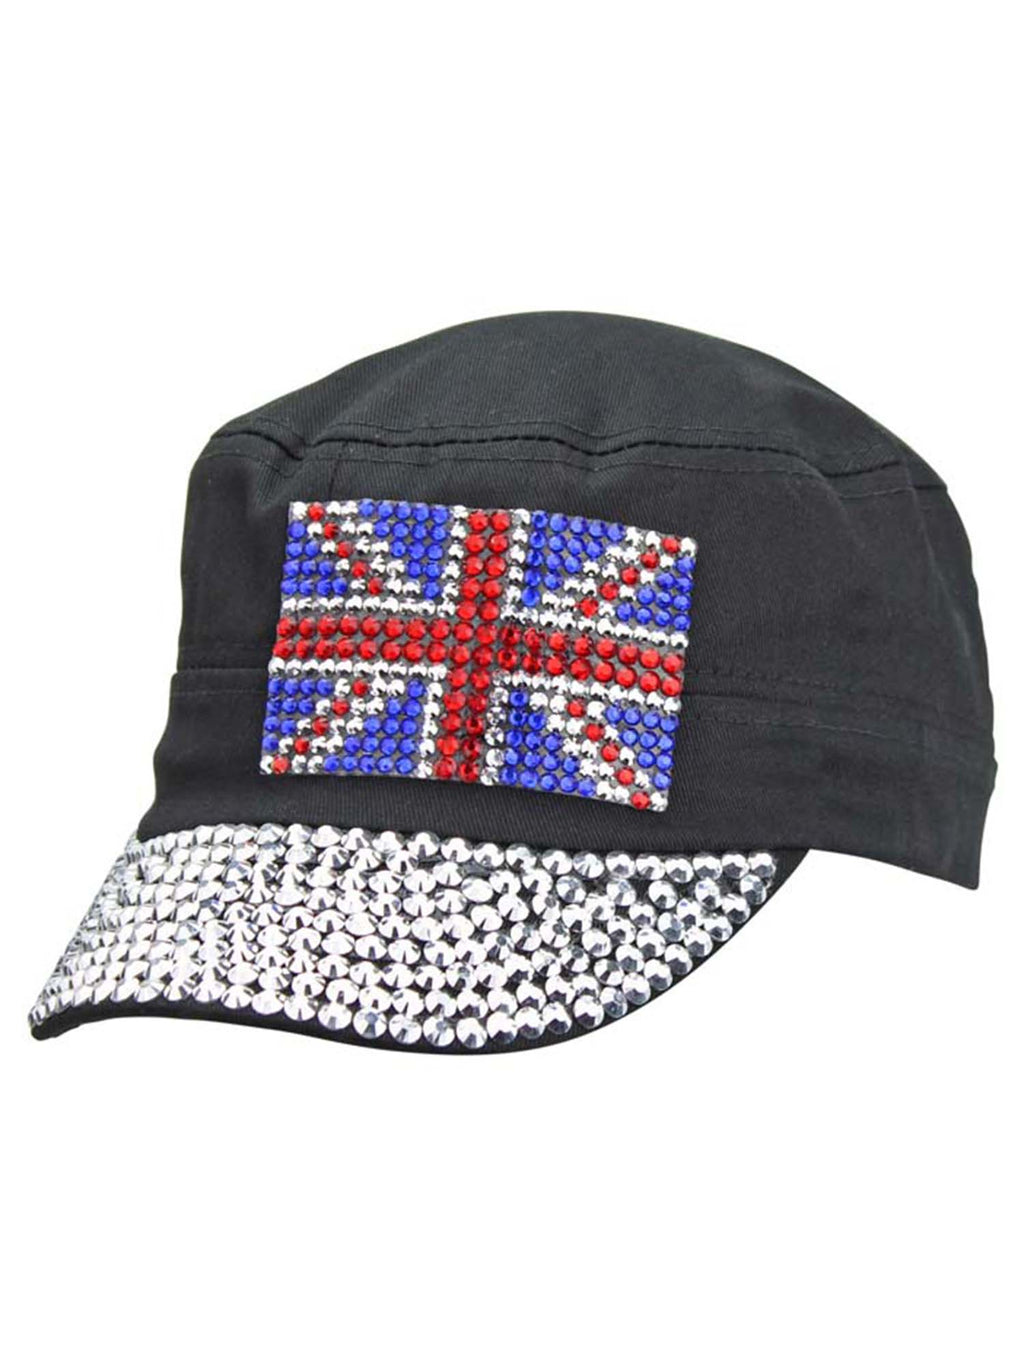 UK Shiny Rhinestone Studded Cadet Cap Hat